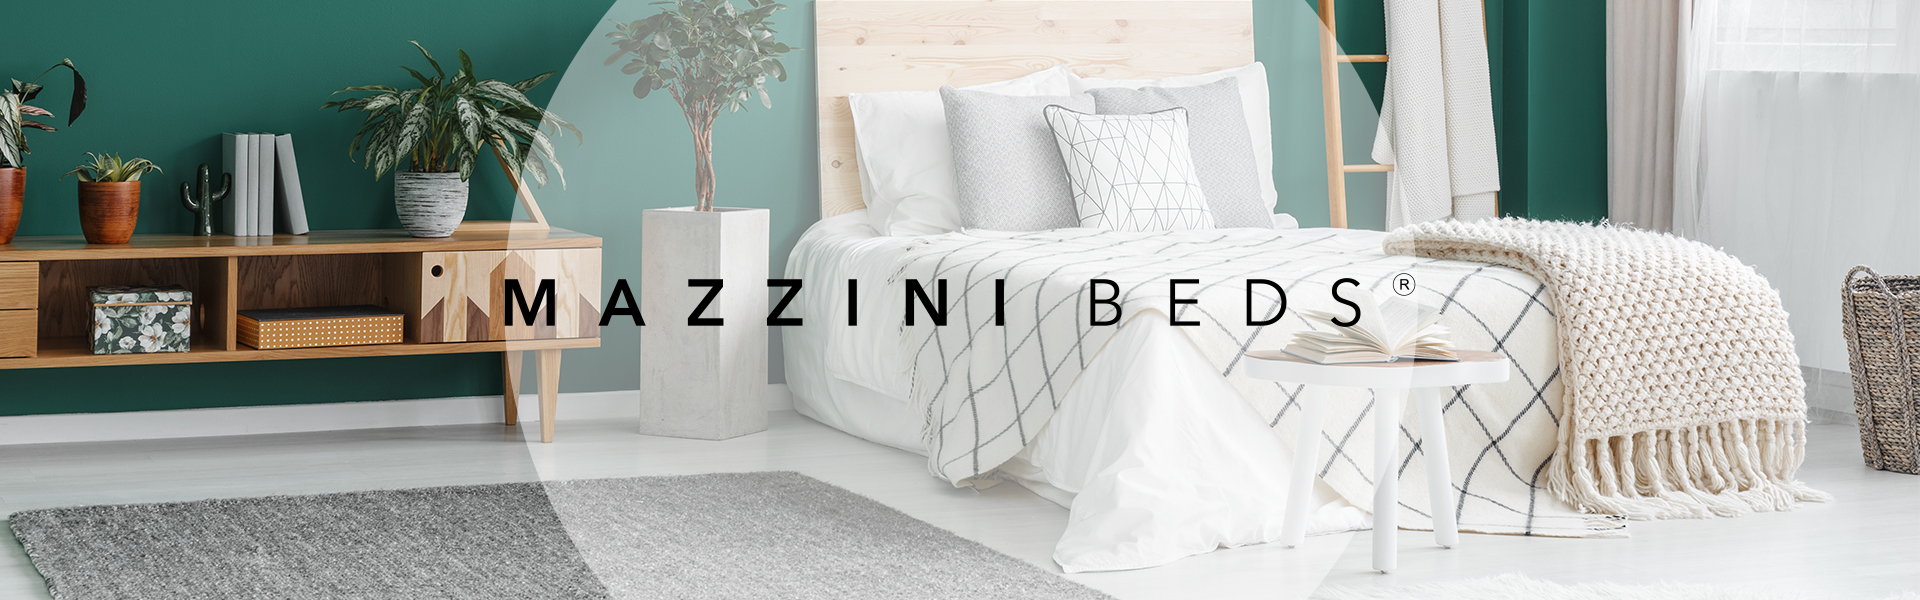 Кровать Mazzini Beds Yucca 140x200 см, светло-зеленая 